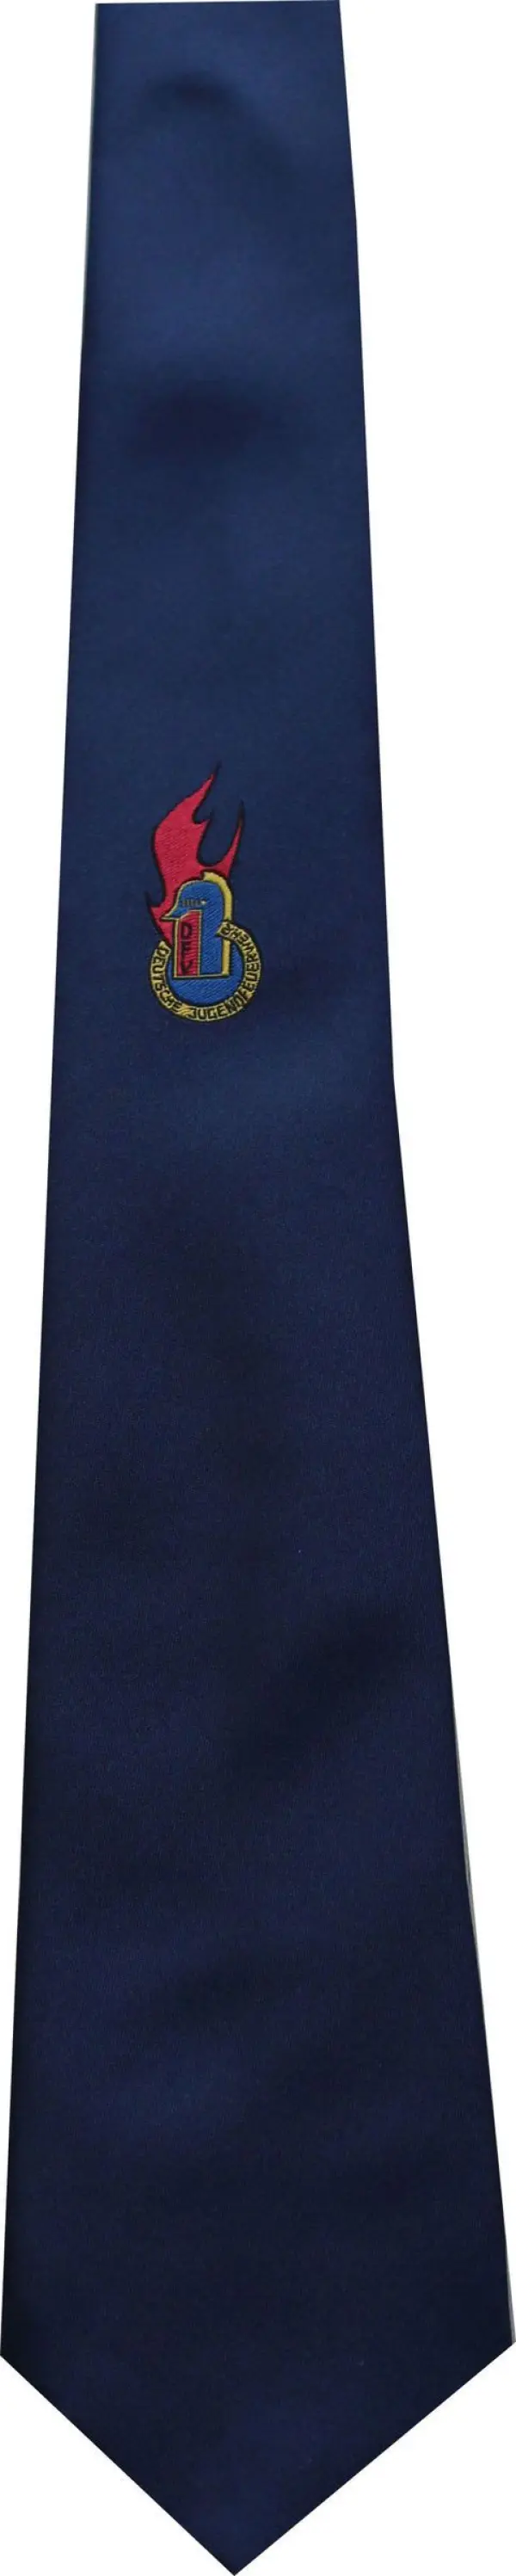 Krawatte Jugendfeuerwehr-Abzeichen